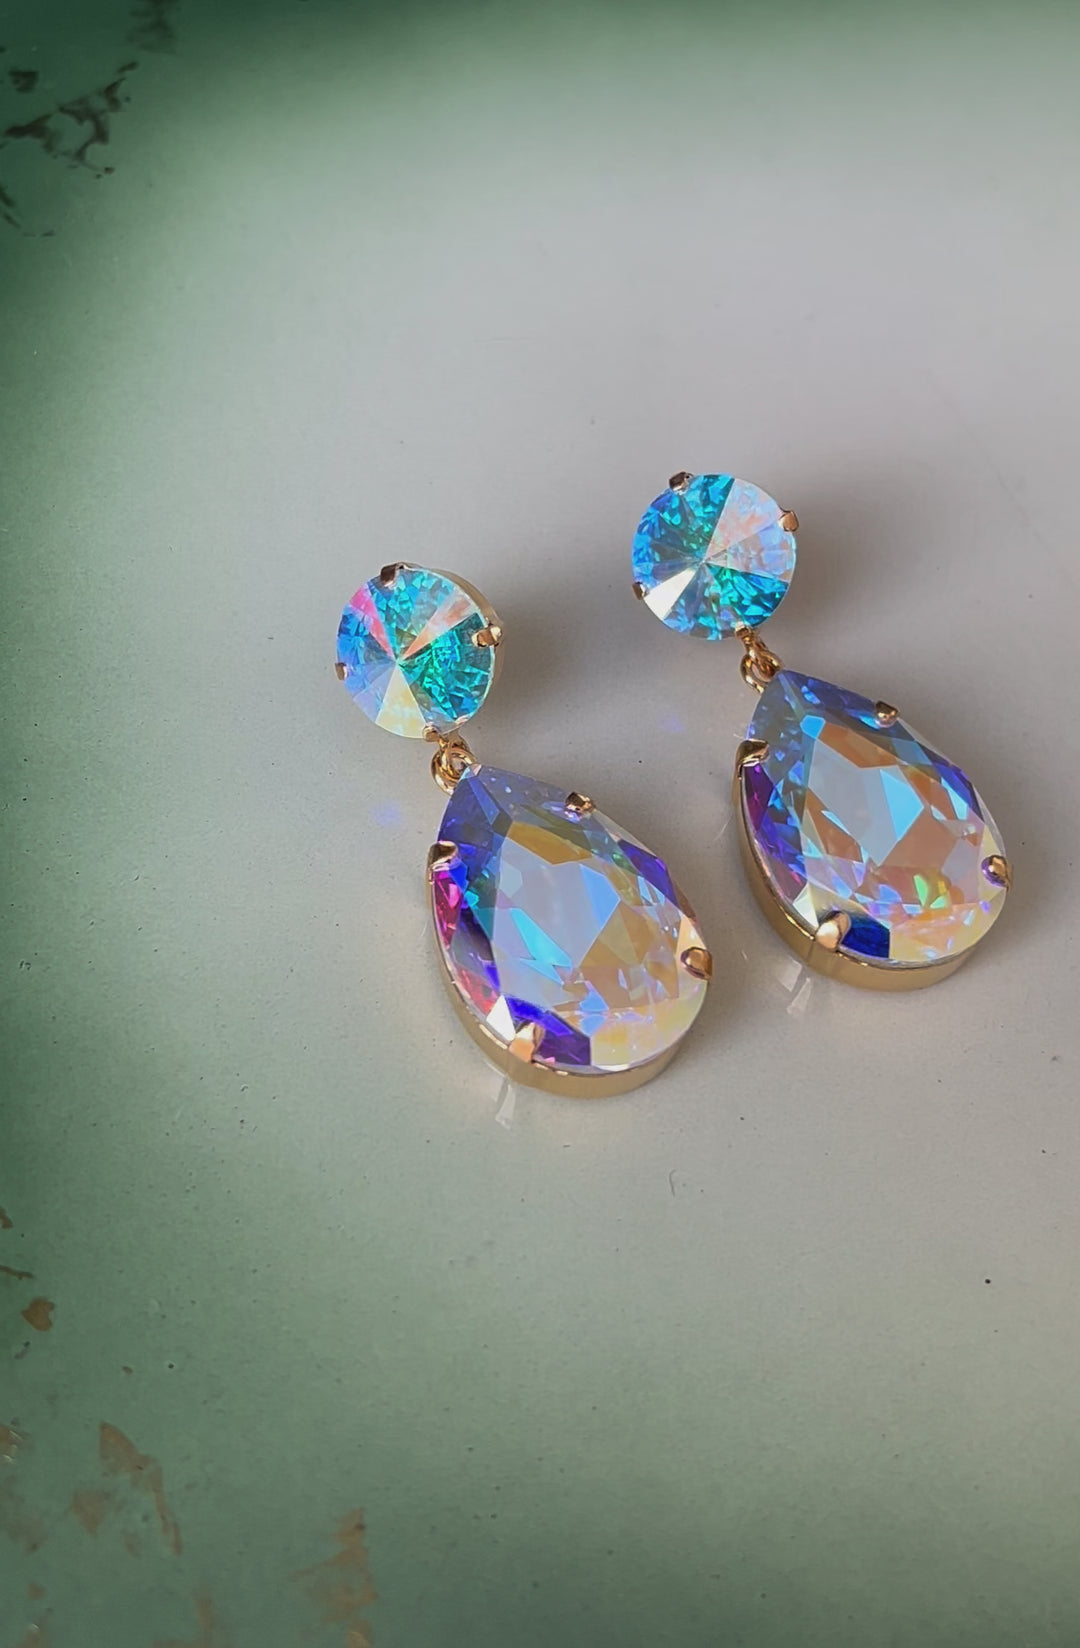 Perfect drop earrings - aurore boreale